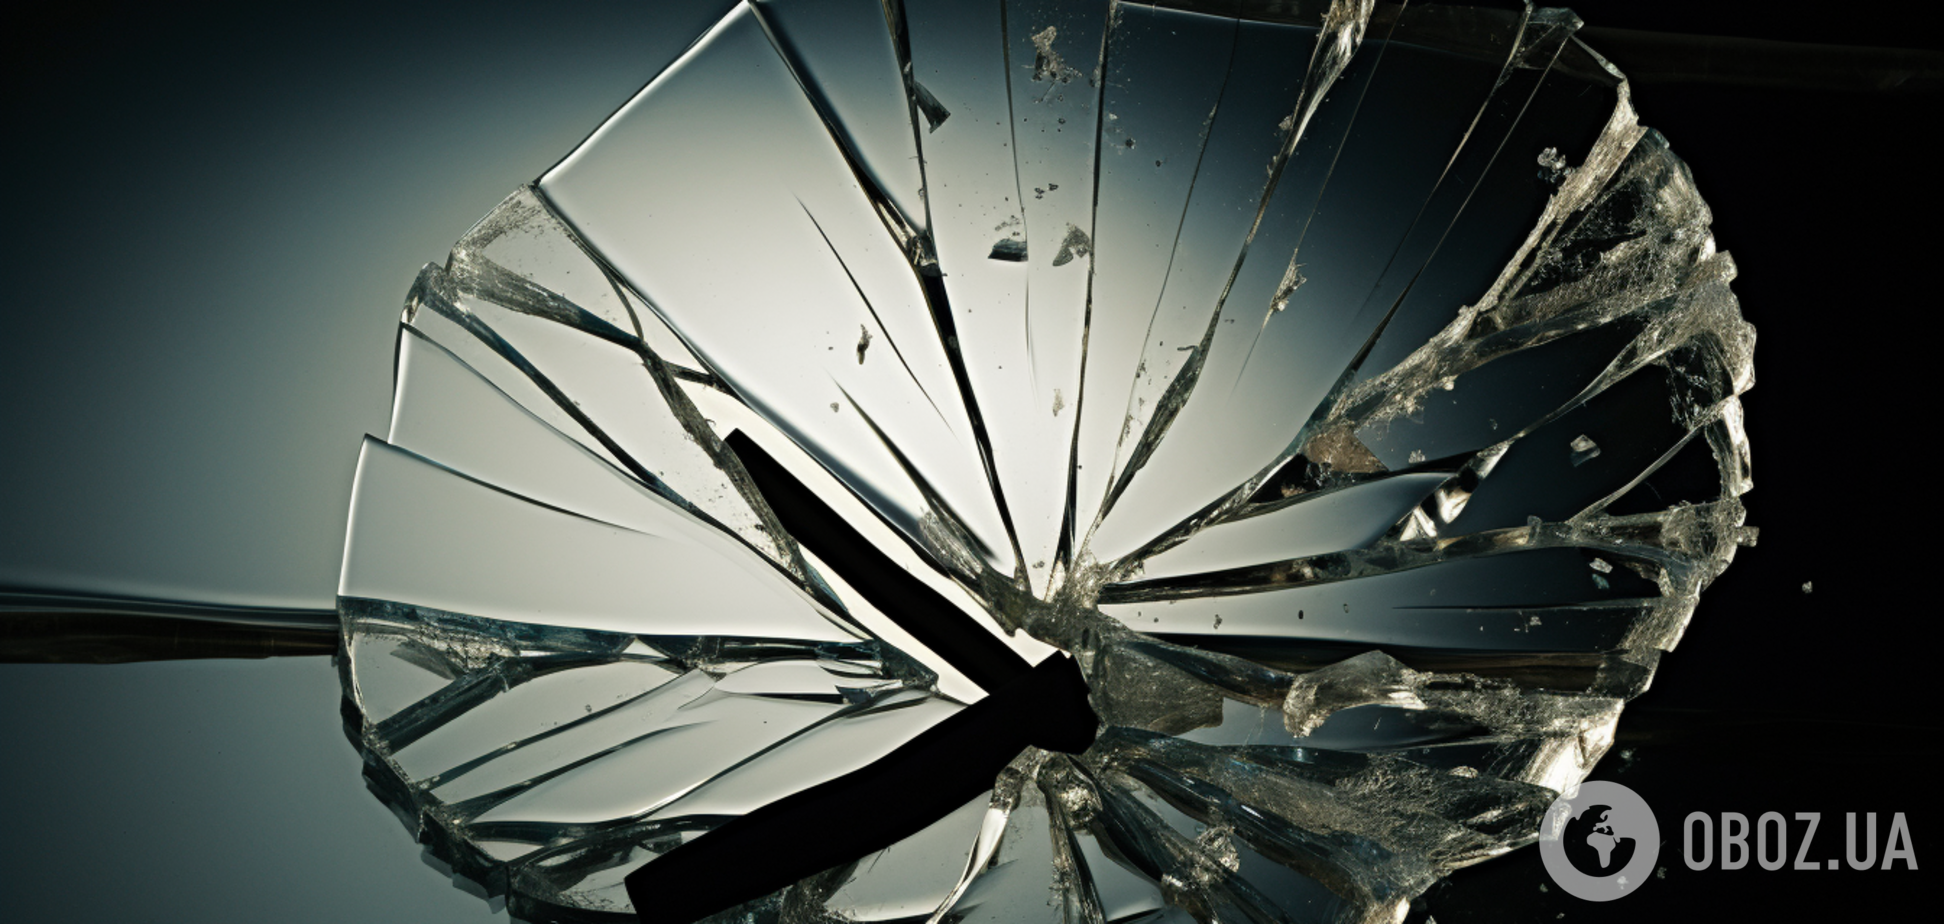 Не только разбитое зеркало: какие приметы предупреждают о несчастьях